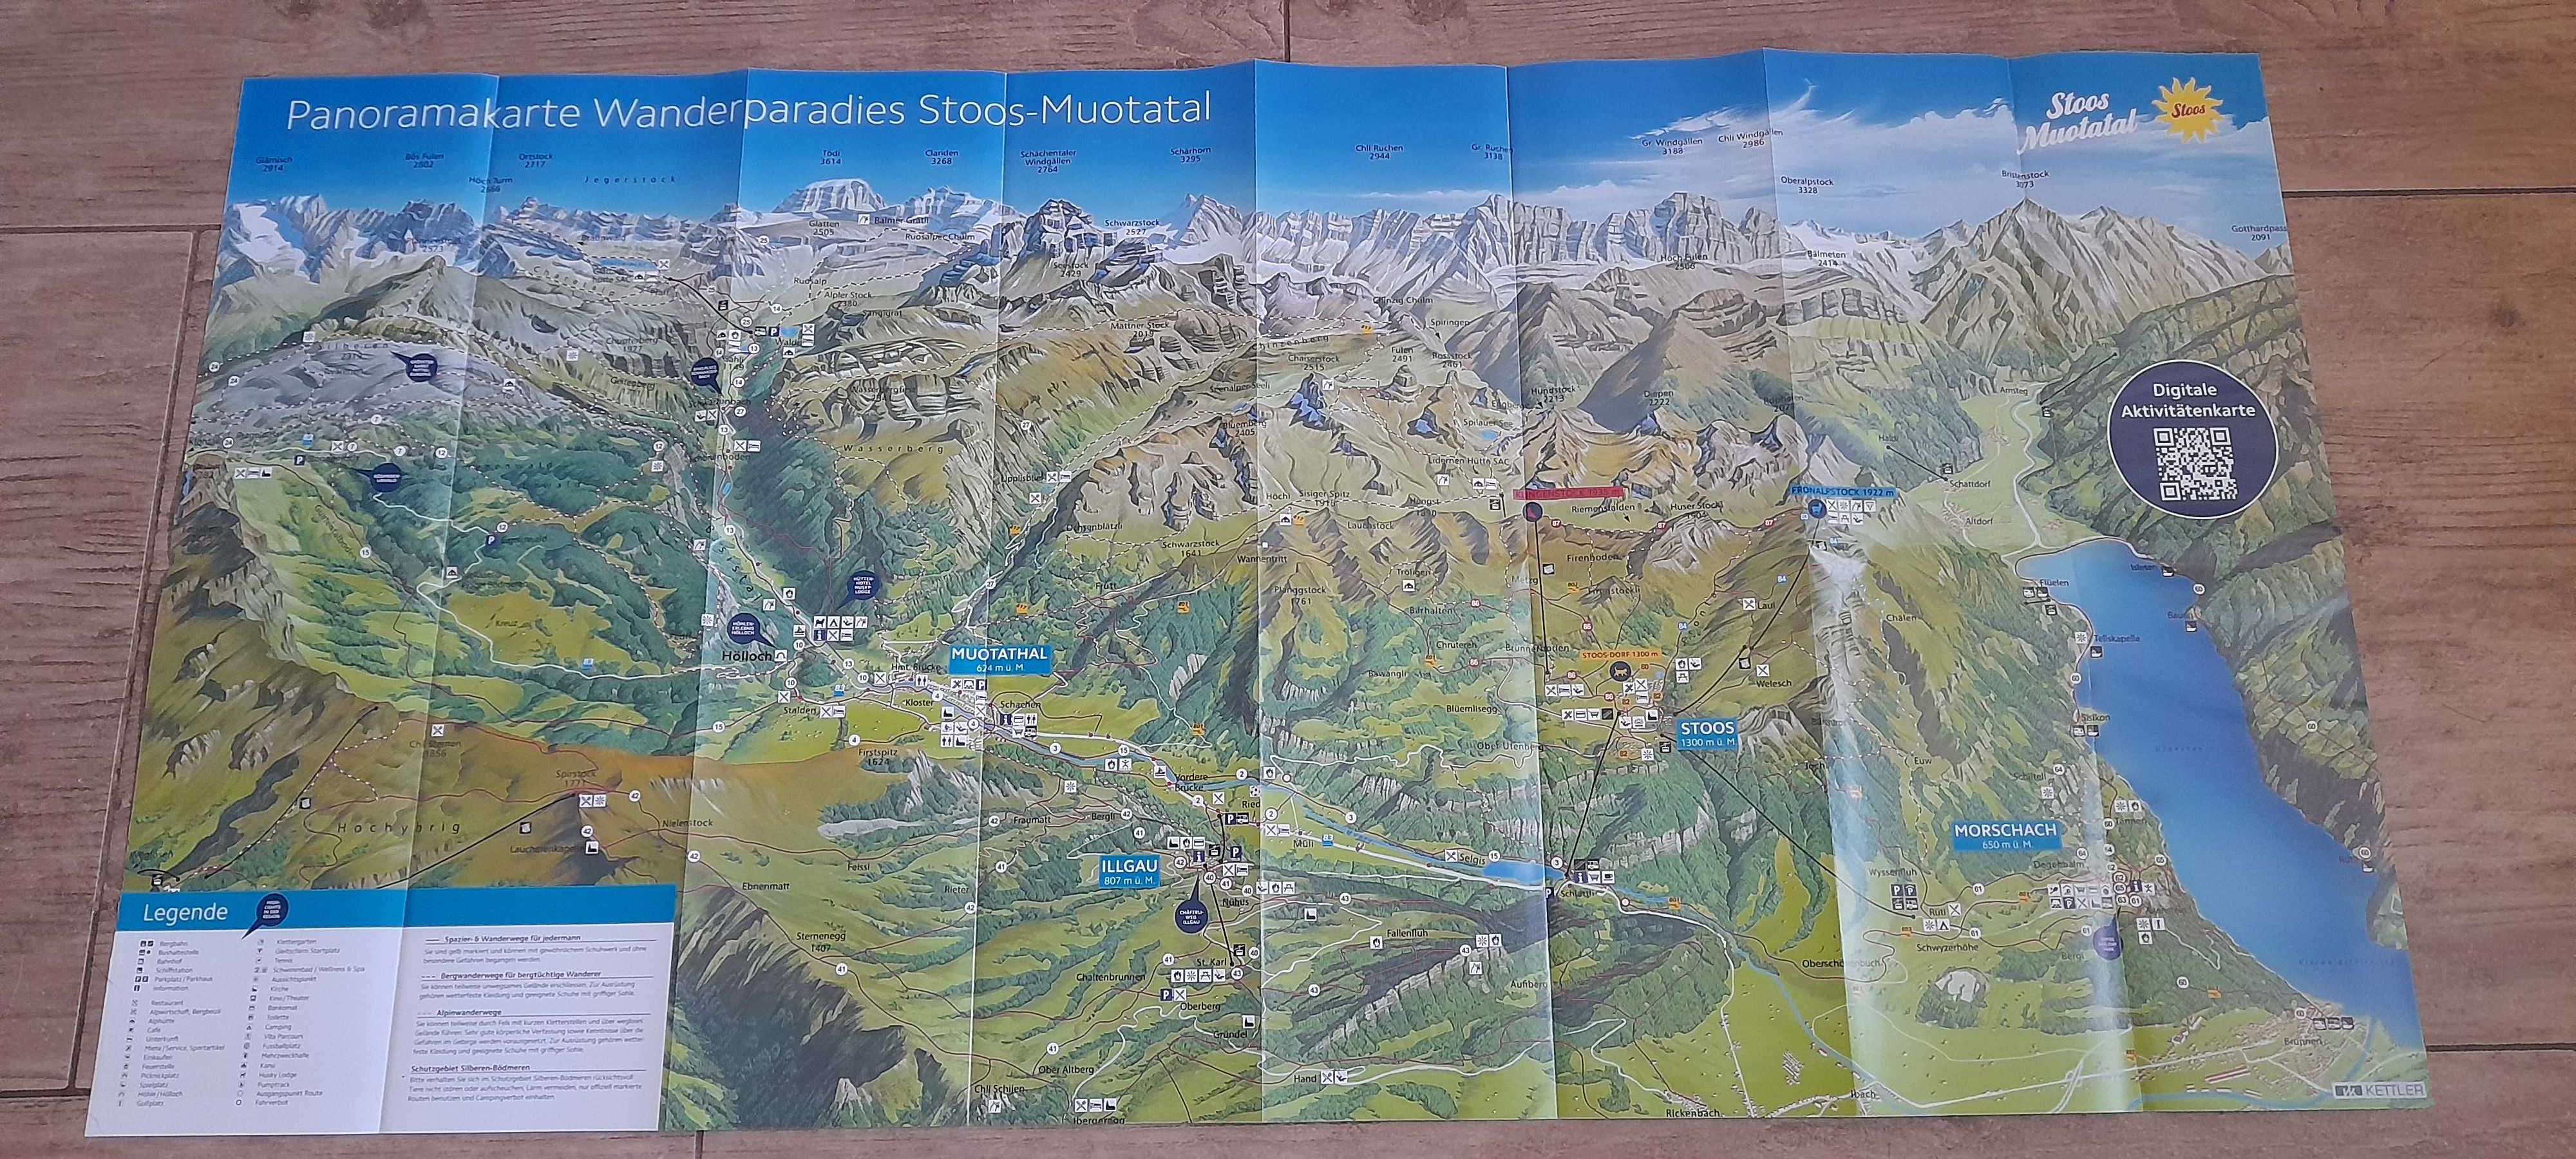 Mapa turystyczno-panoramiczna szwajcarskiego regionu Stoos-Muotatal